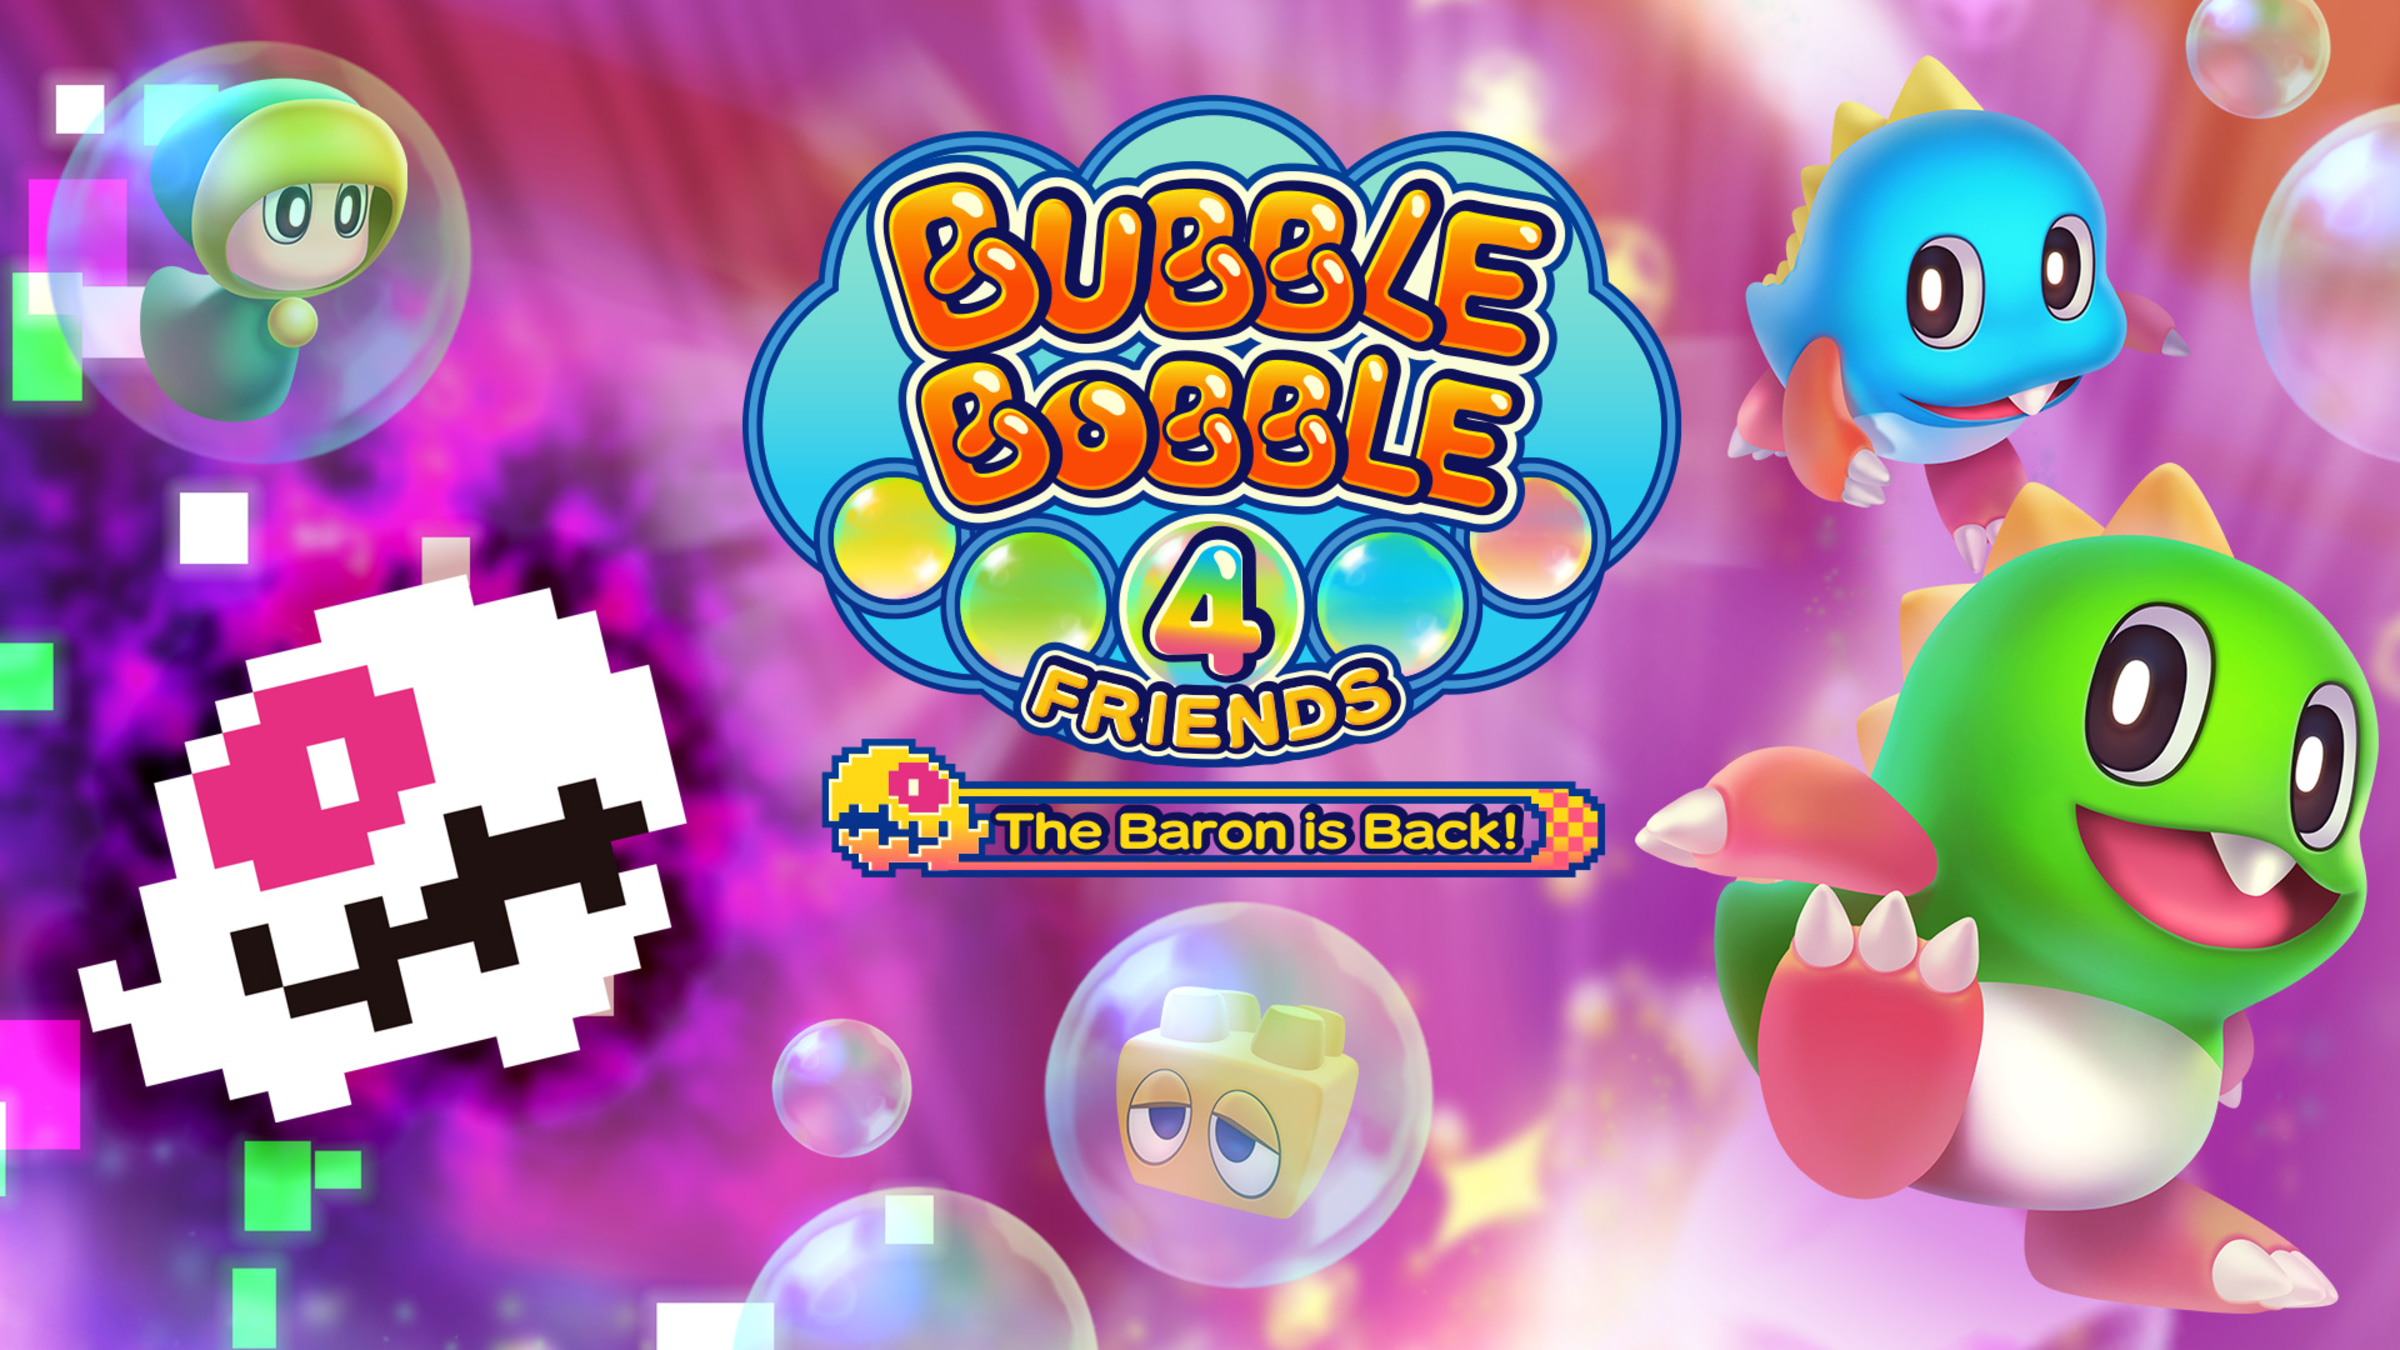 betreden medaillewinnaar Heel Bubble Bobble 4 Friends: The Baron is Back! for Nintendo Switch - Nintendo  Official Site